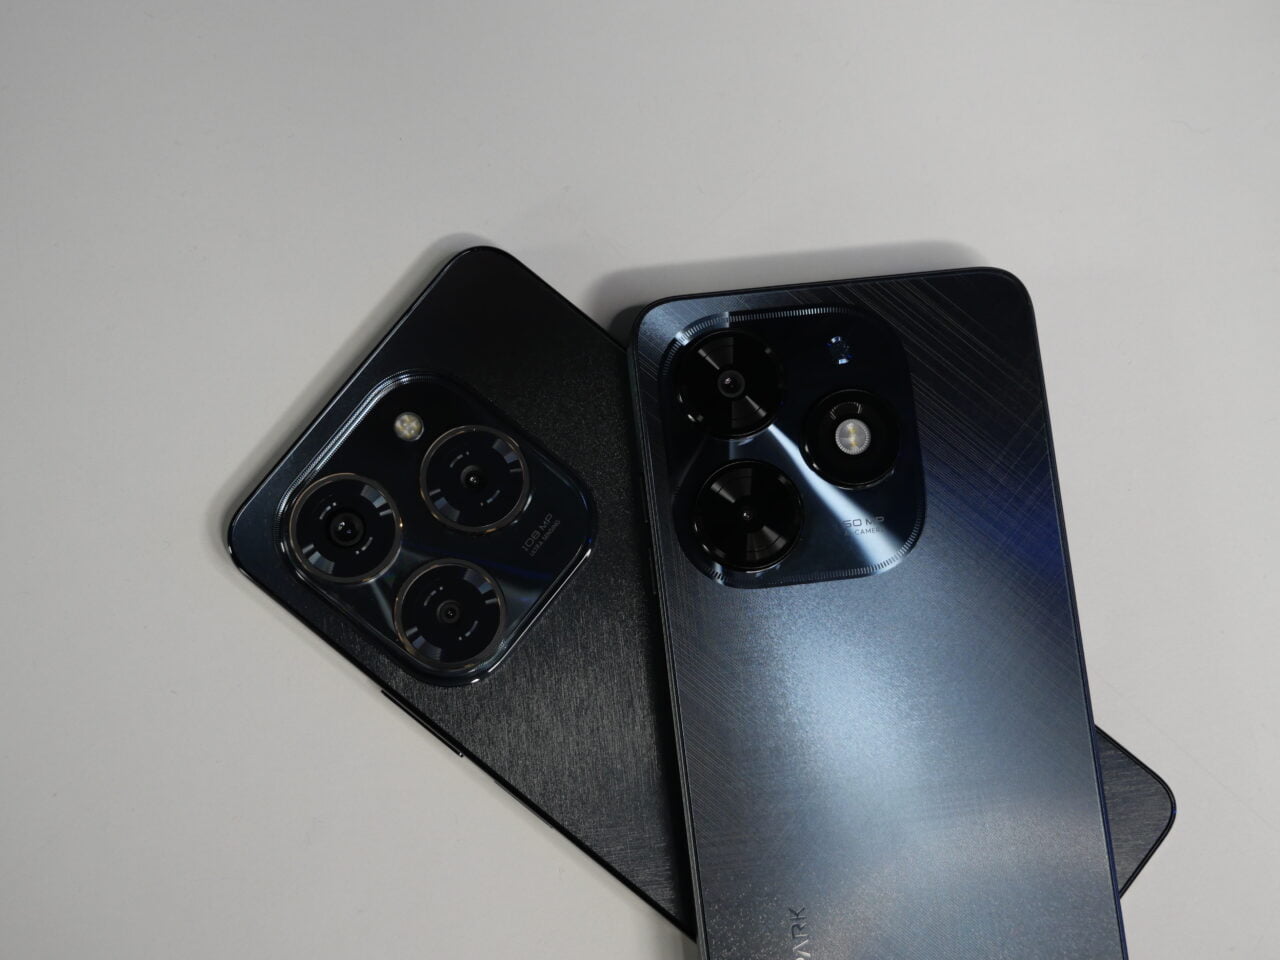 Dwa smartfony leżące na stole, jeden czarny i drugi niebieski, z widocznymi wieloma obiektywami aparatu na tylnym panelu.